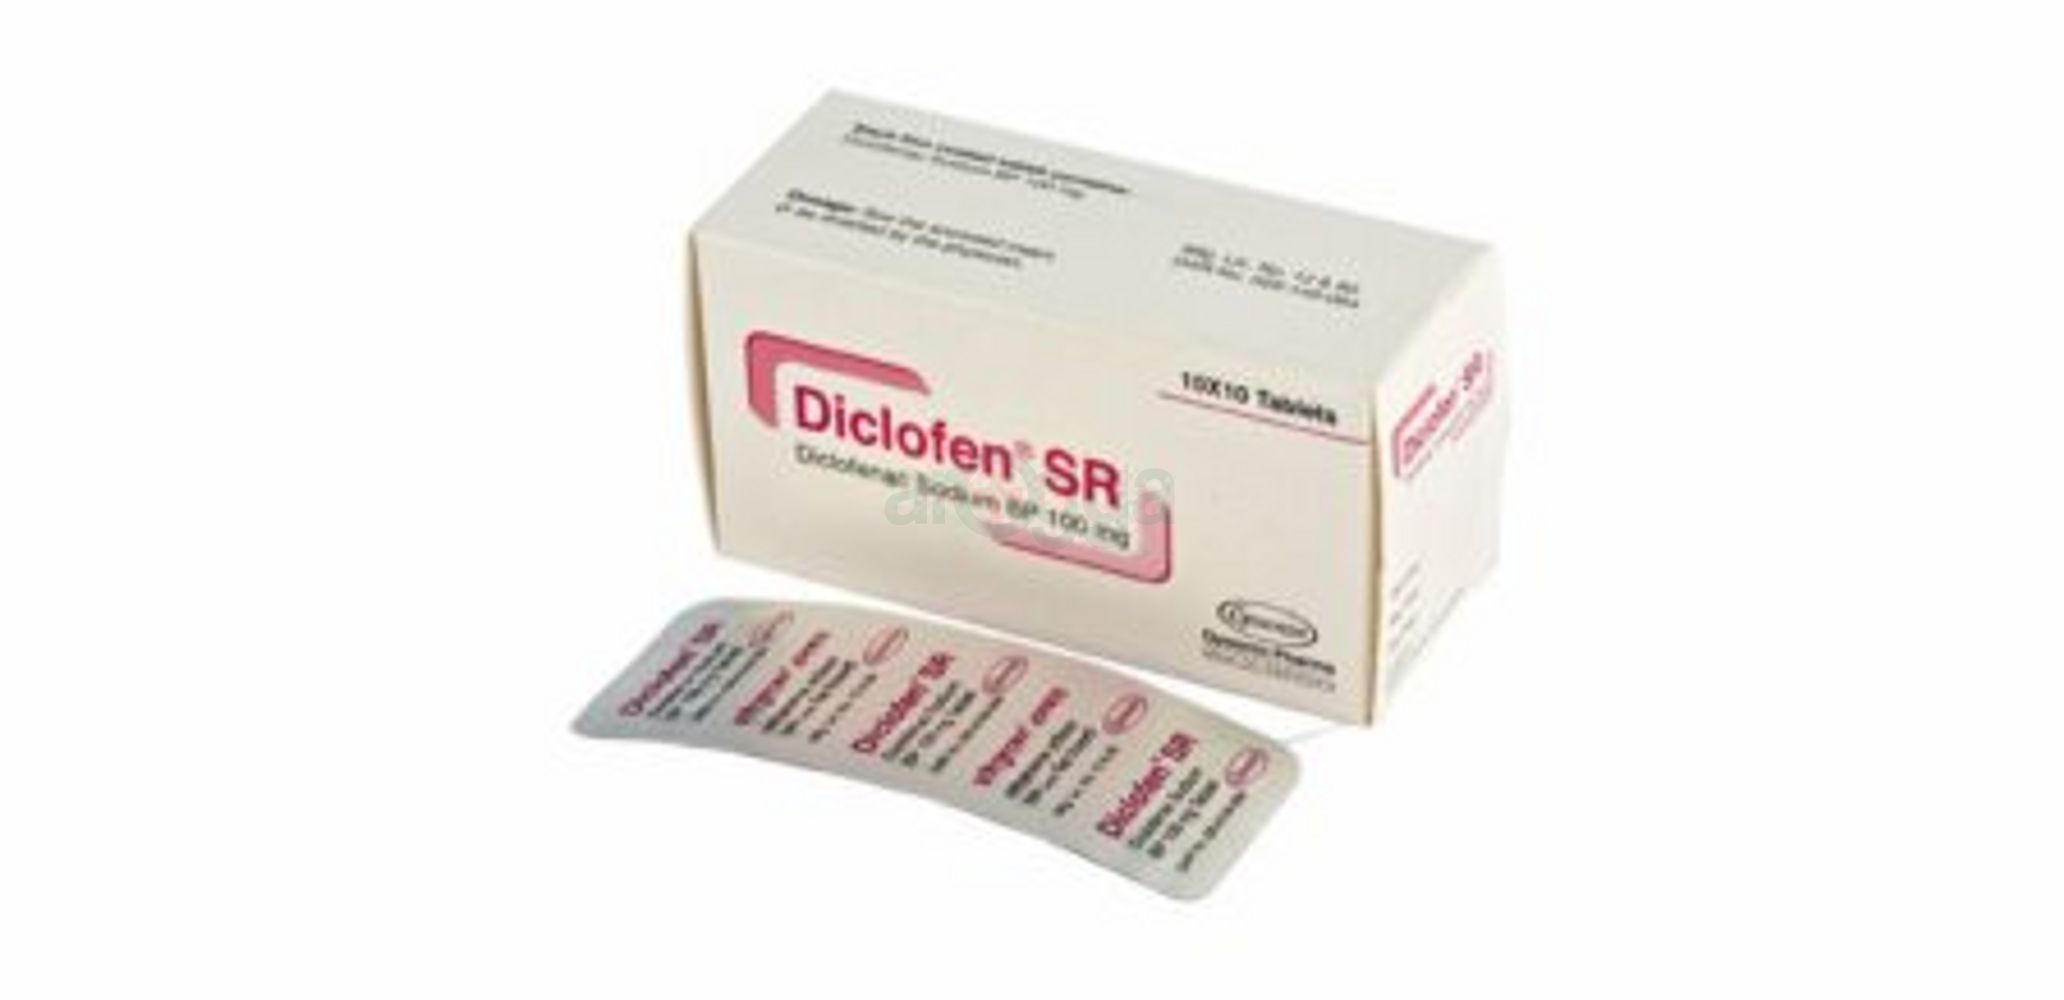 Diclofen SR